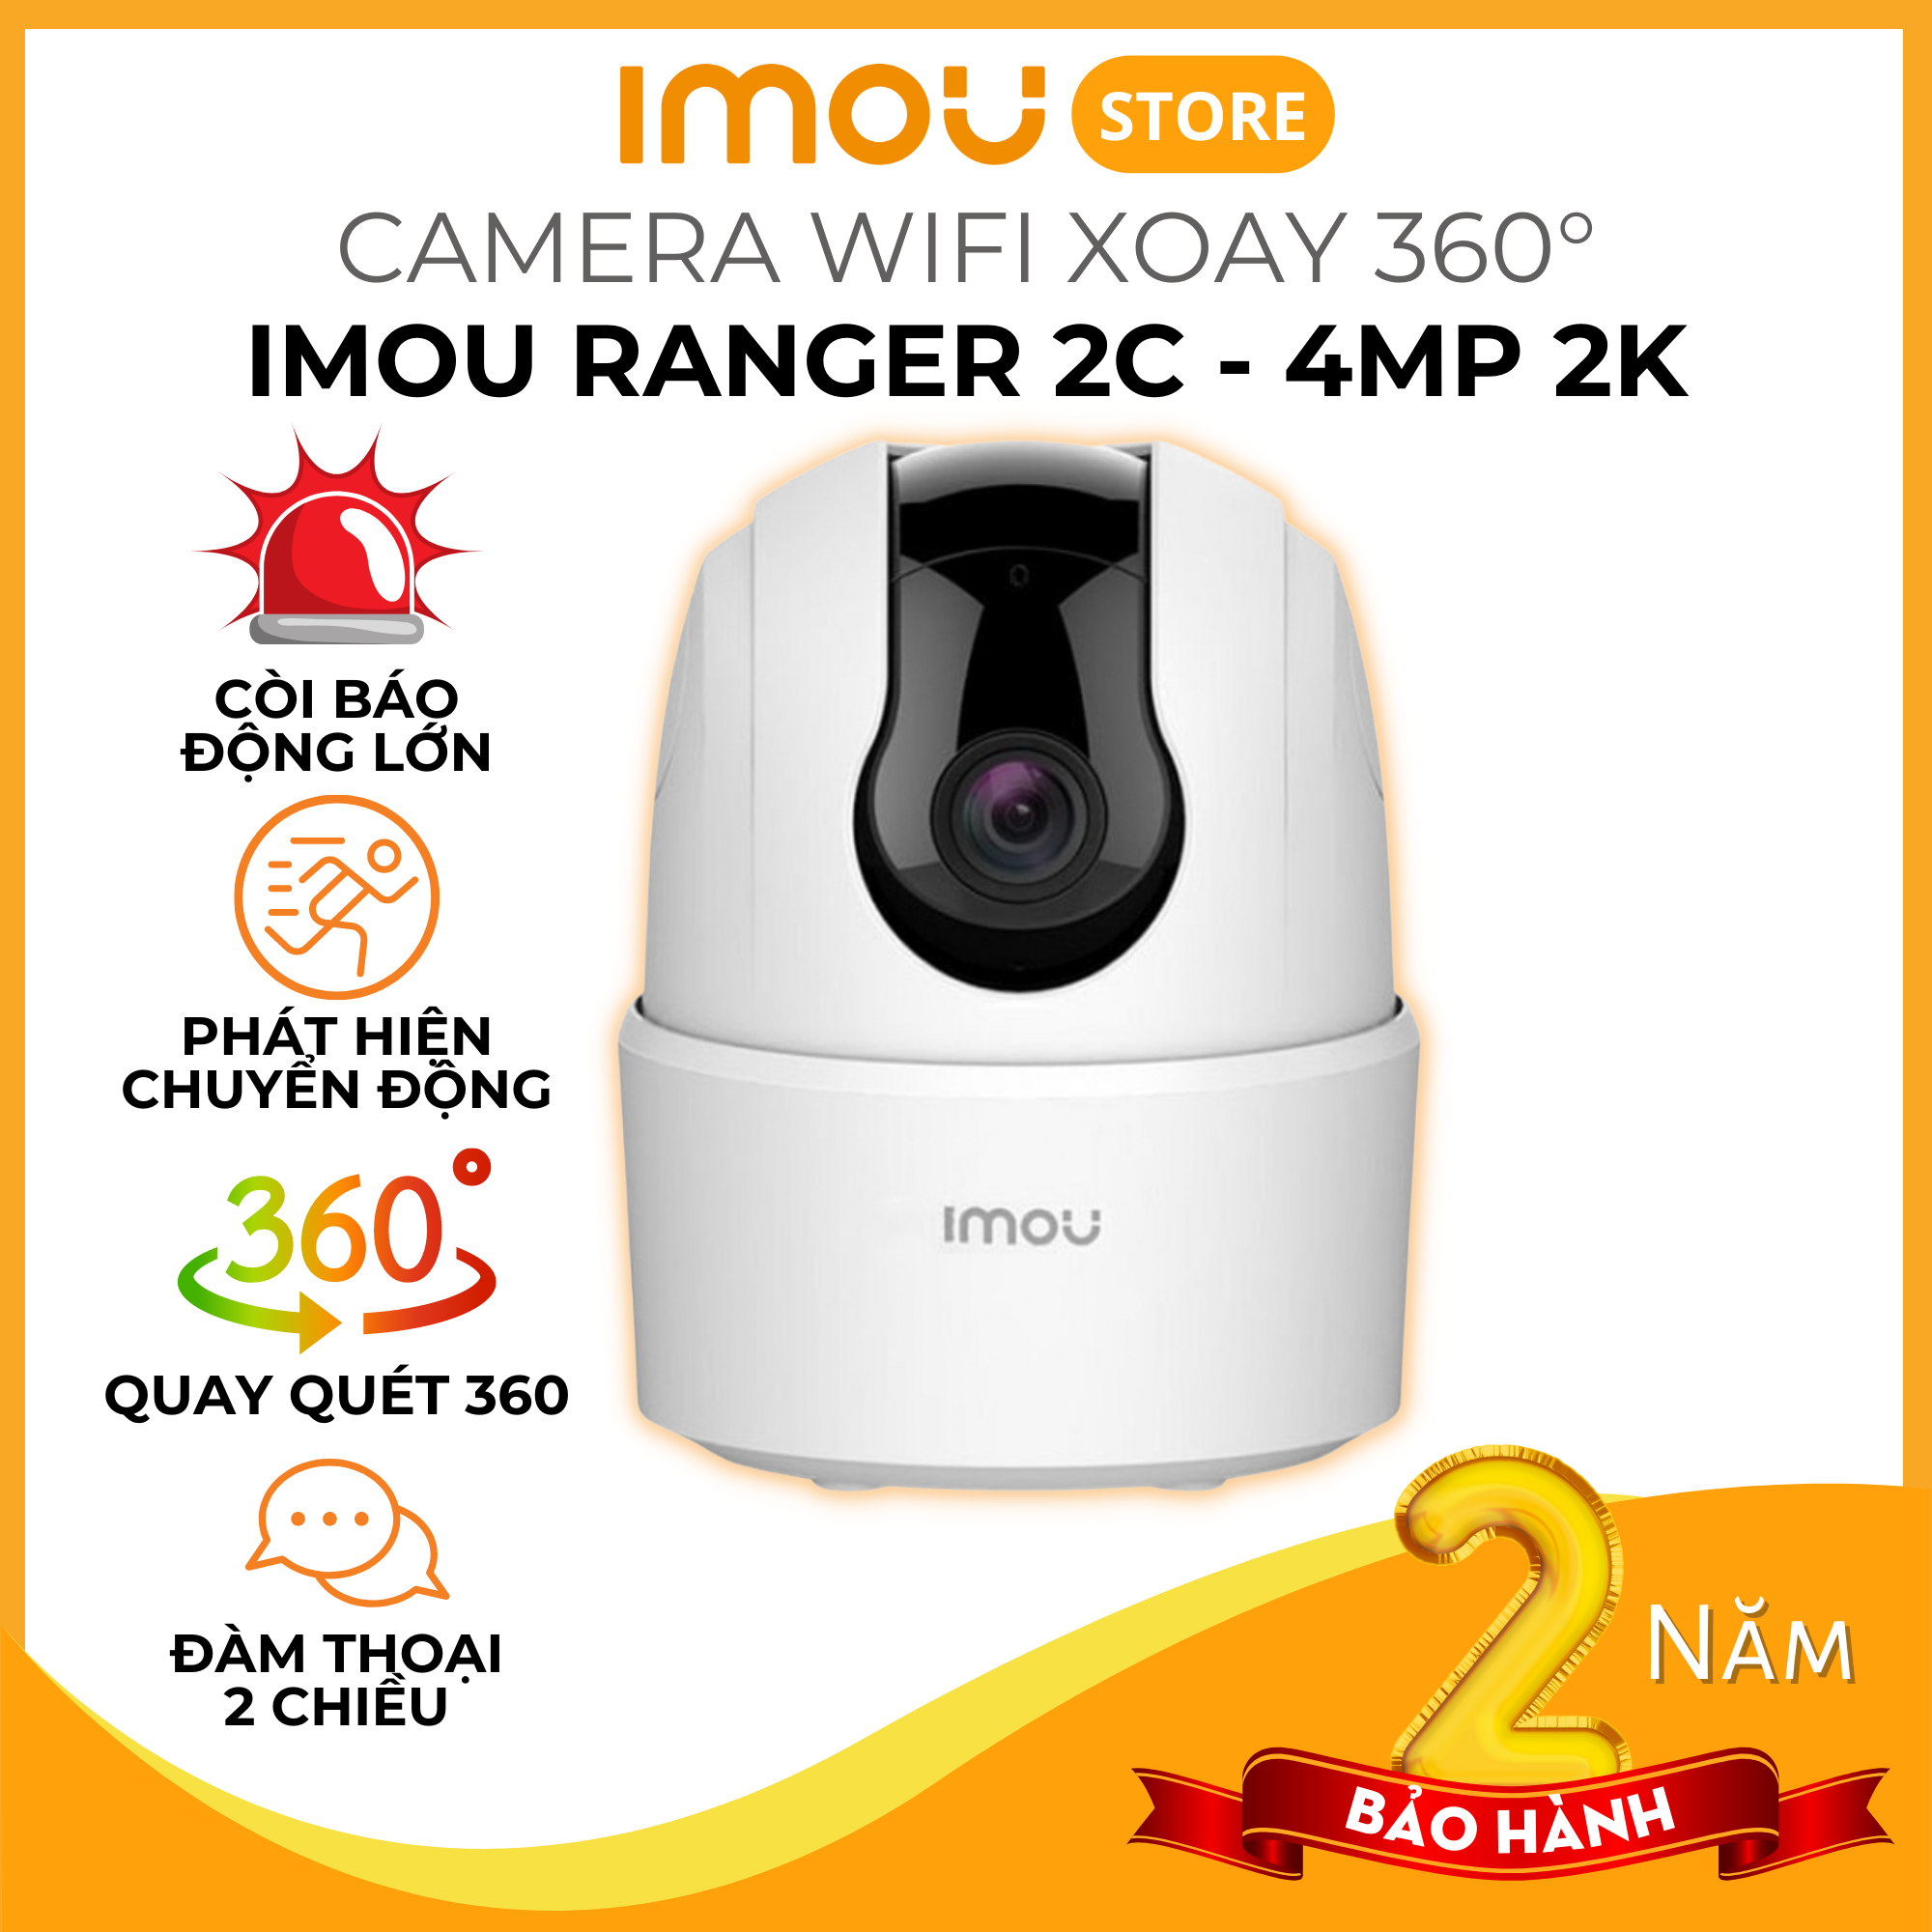 Camera IMOU Ranger 2C, Camera Xoay 360, AI Phát hiện người, màng trập riêng tư 2MP4MP - Hàng Chính Hãng - 4MP